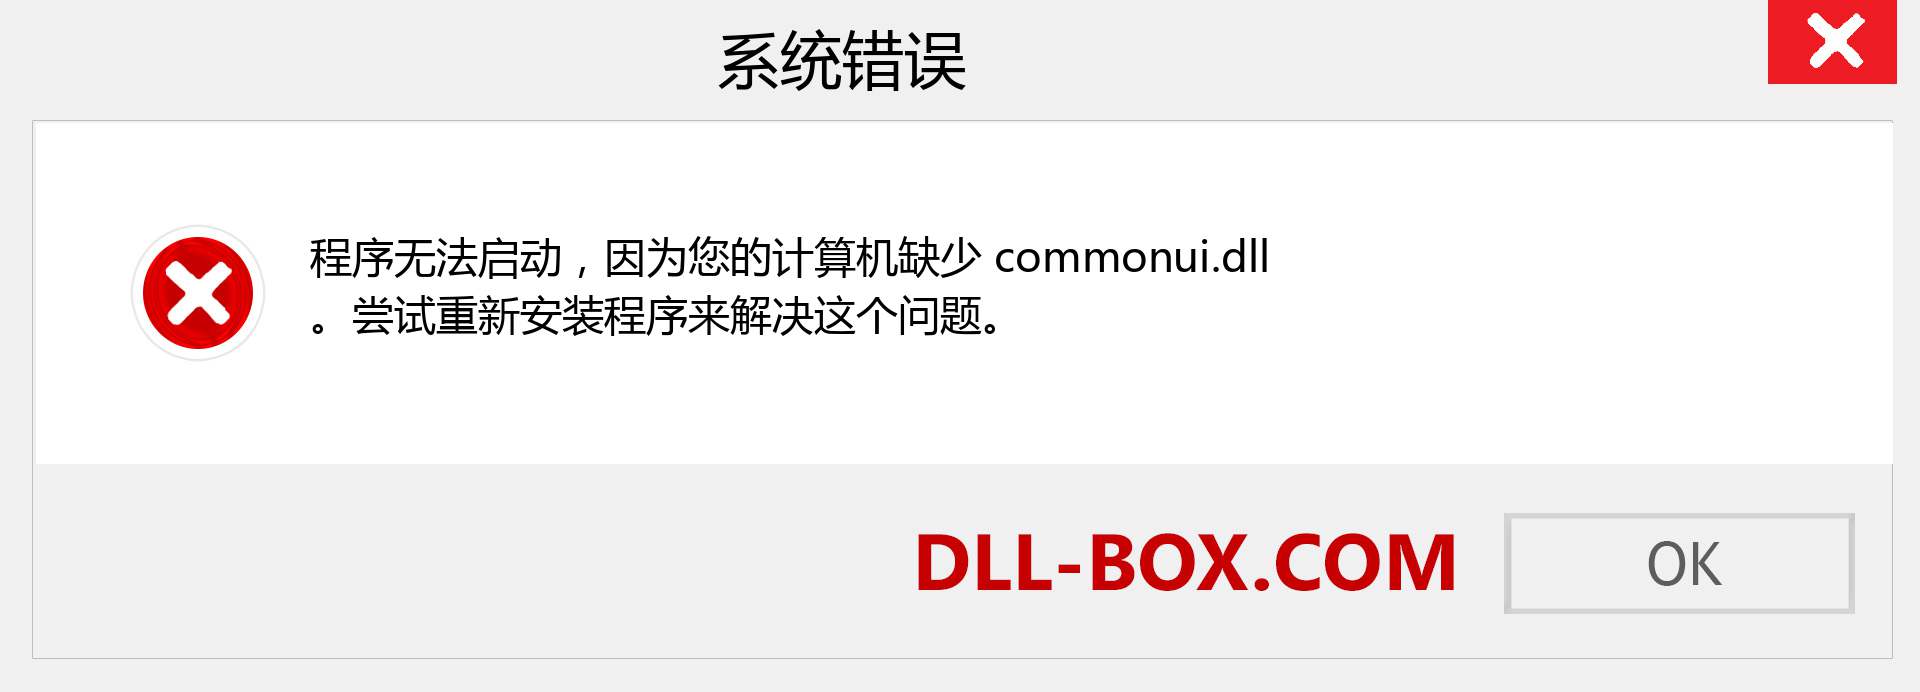 commonui.dll 文件丢失？。 适用于 Windows 7、8、10 的下载 - 修复 Windows、照片、图像上的 commonui dll 丢失错误